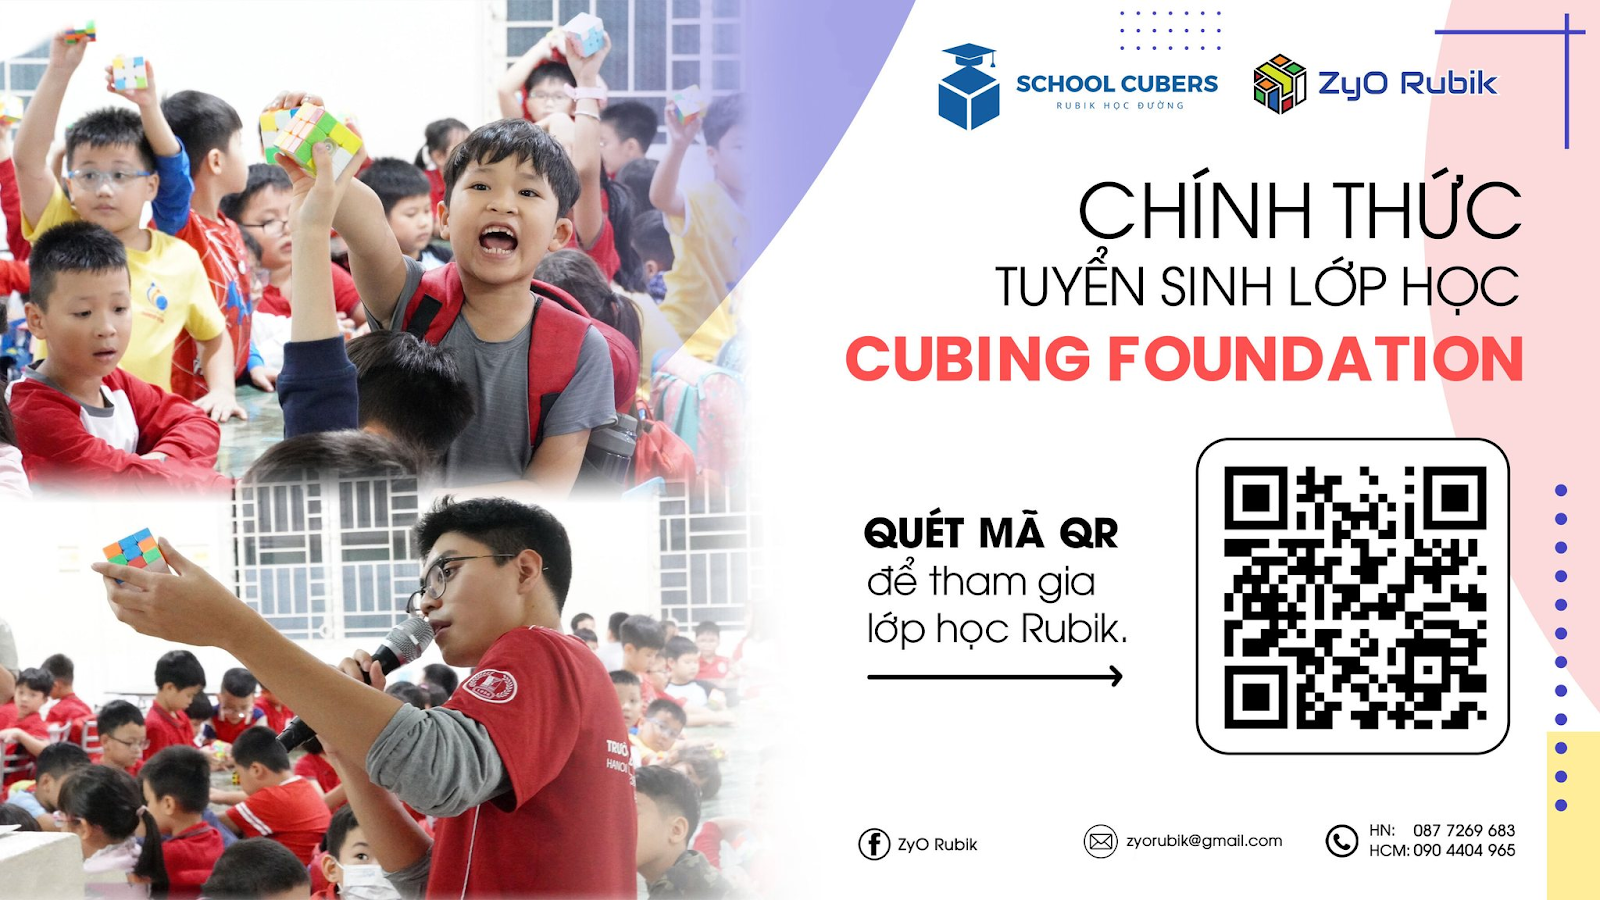 Lớp học Rubik Cubing Foundation: Chinh phục Rubik, chinh phục bản thân